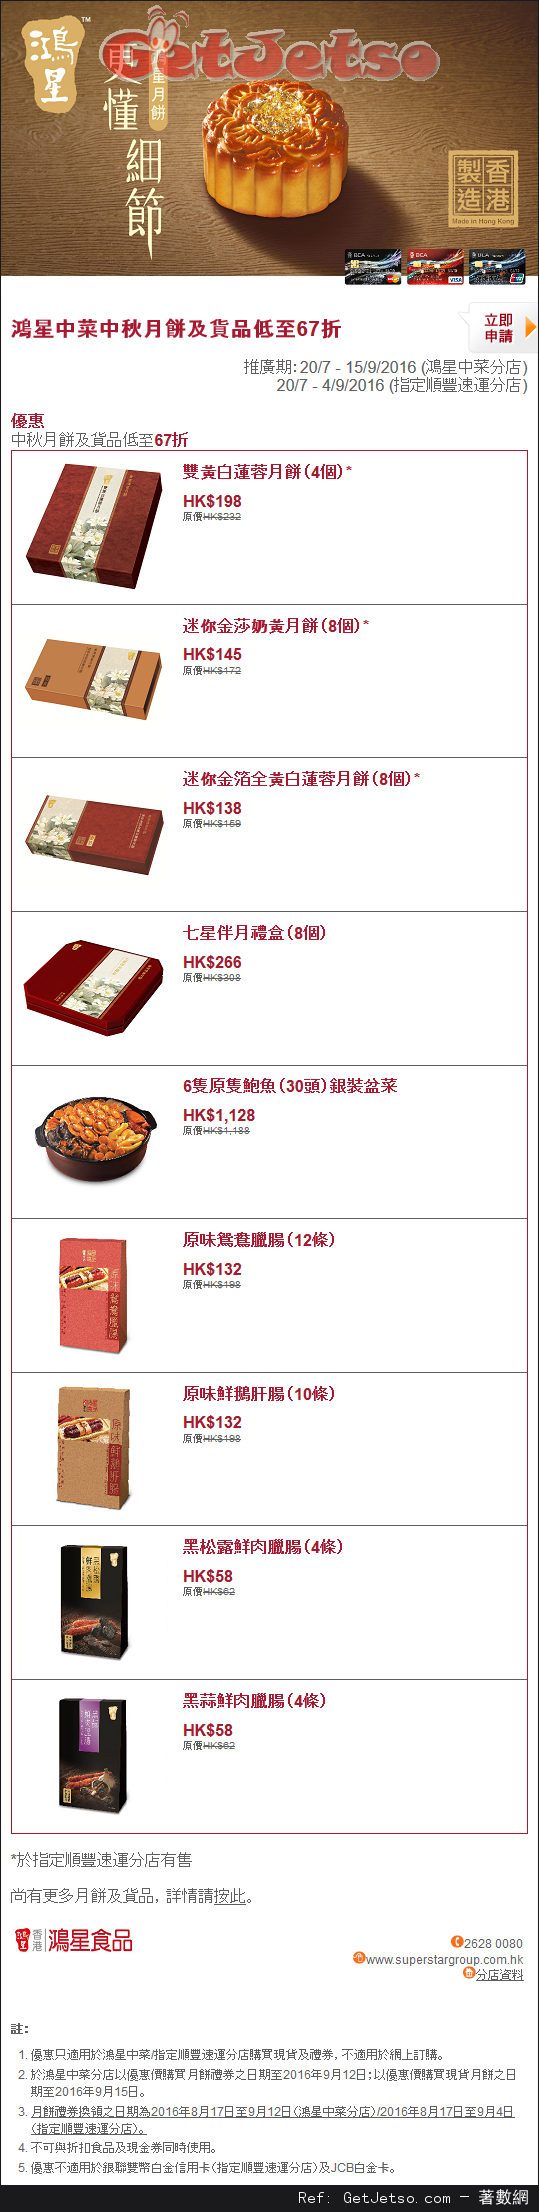 東亞信用卡享鴻星中菜中秋月餅及貨品低至67折優惠(至16年9月15日)圖片1